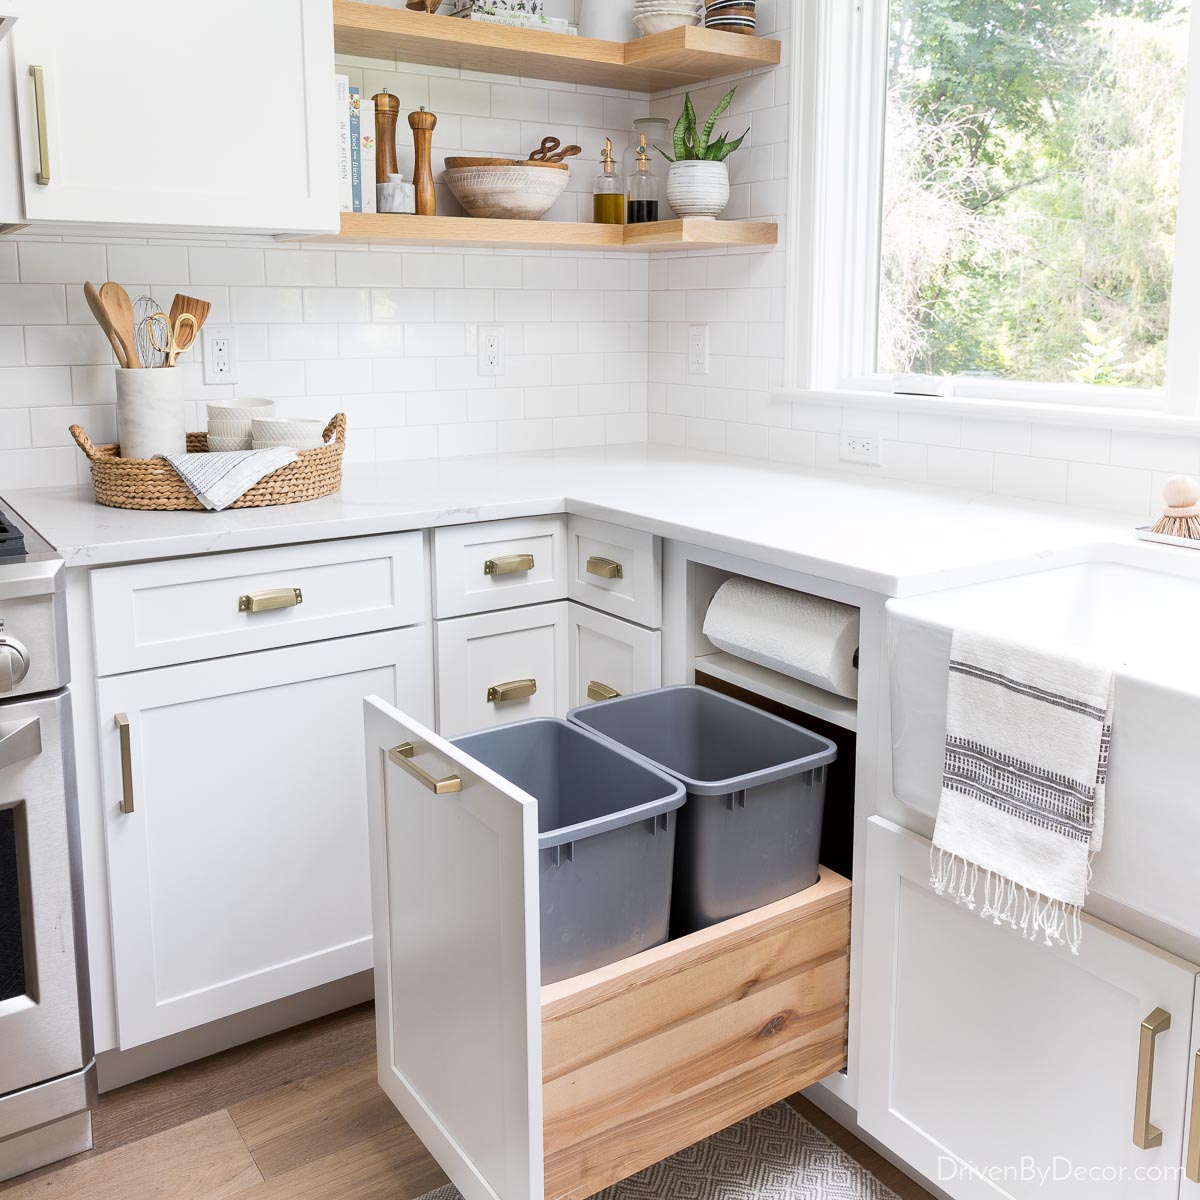 Kitchen Cabinet Storage Ideas   Driven by Decor